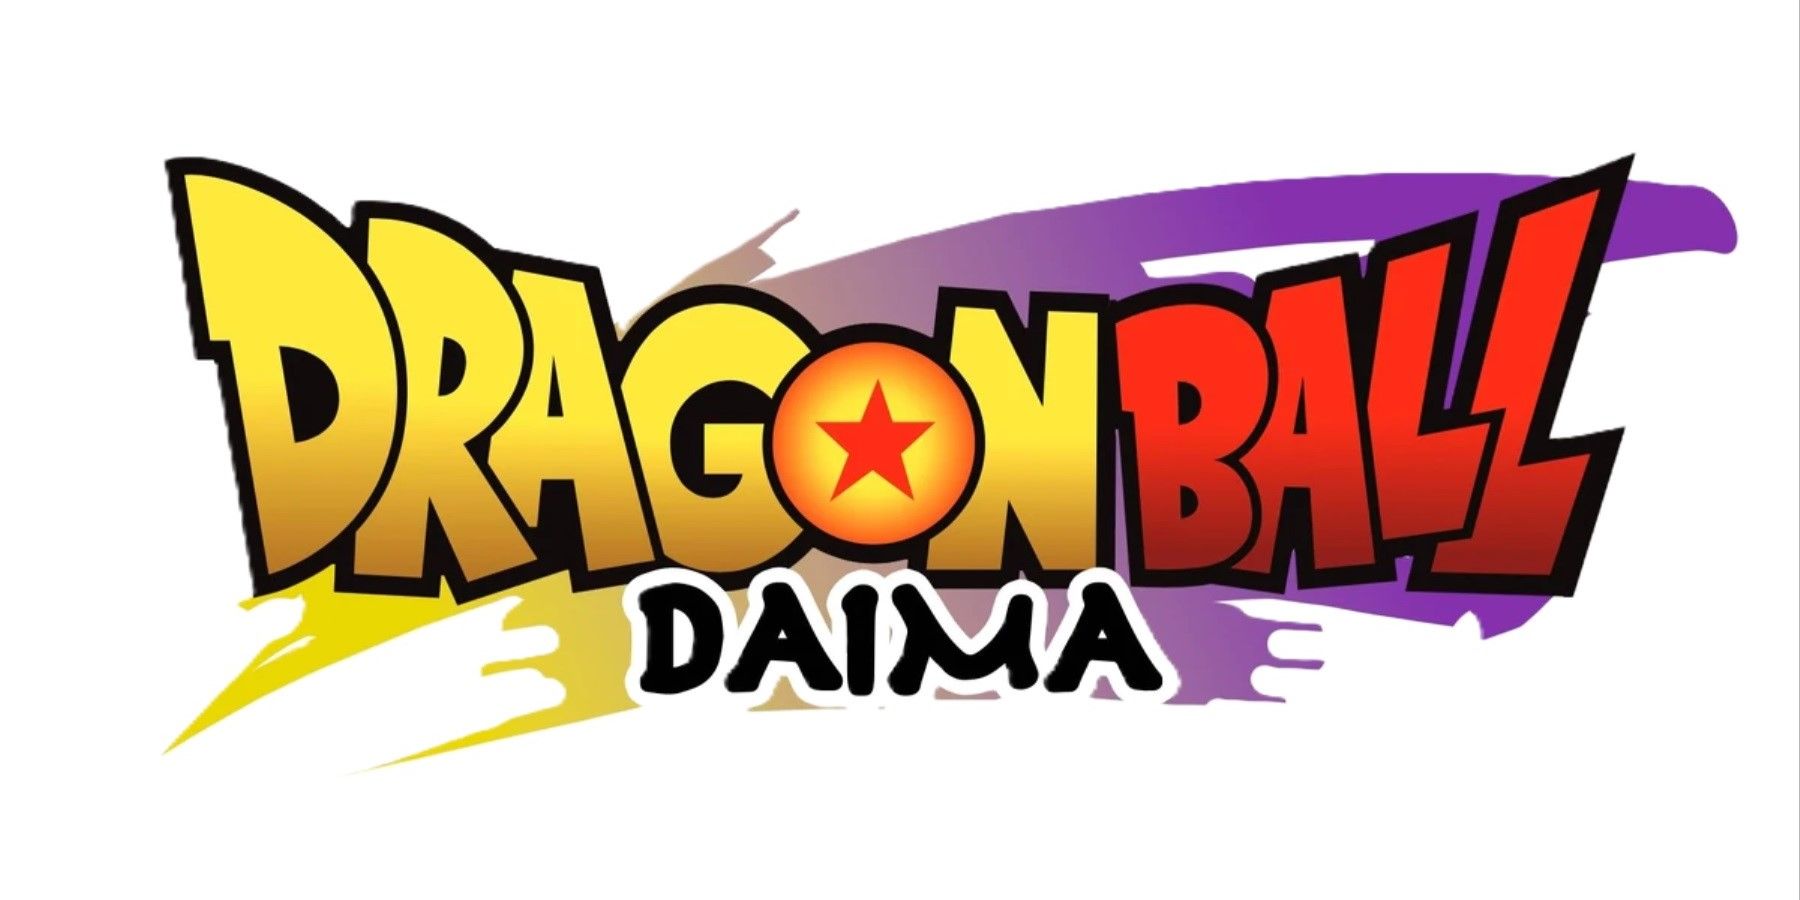 2023) Dragon Ball DAIMA: OFFICIAL ANIME REVEAL! KID GOKU RETURNS! 